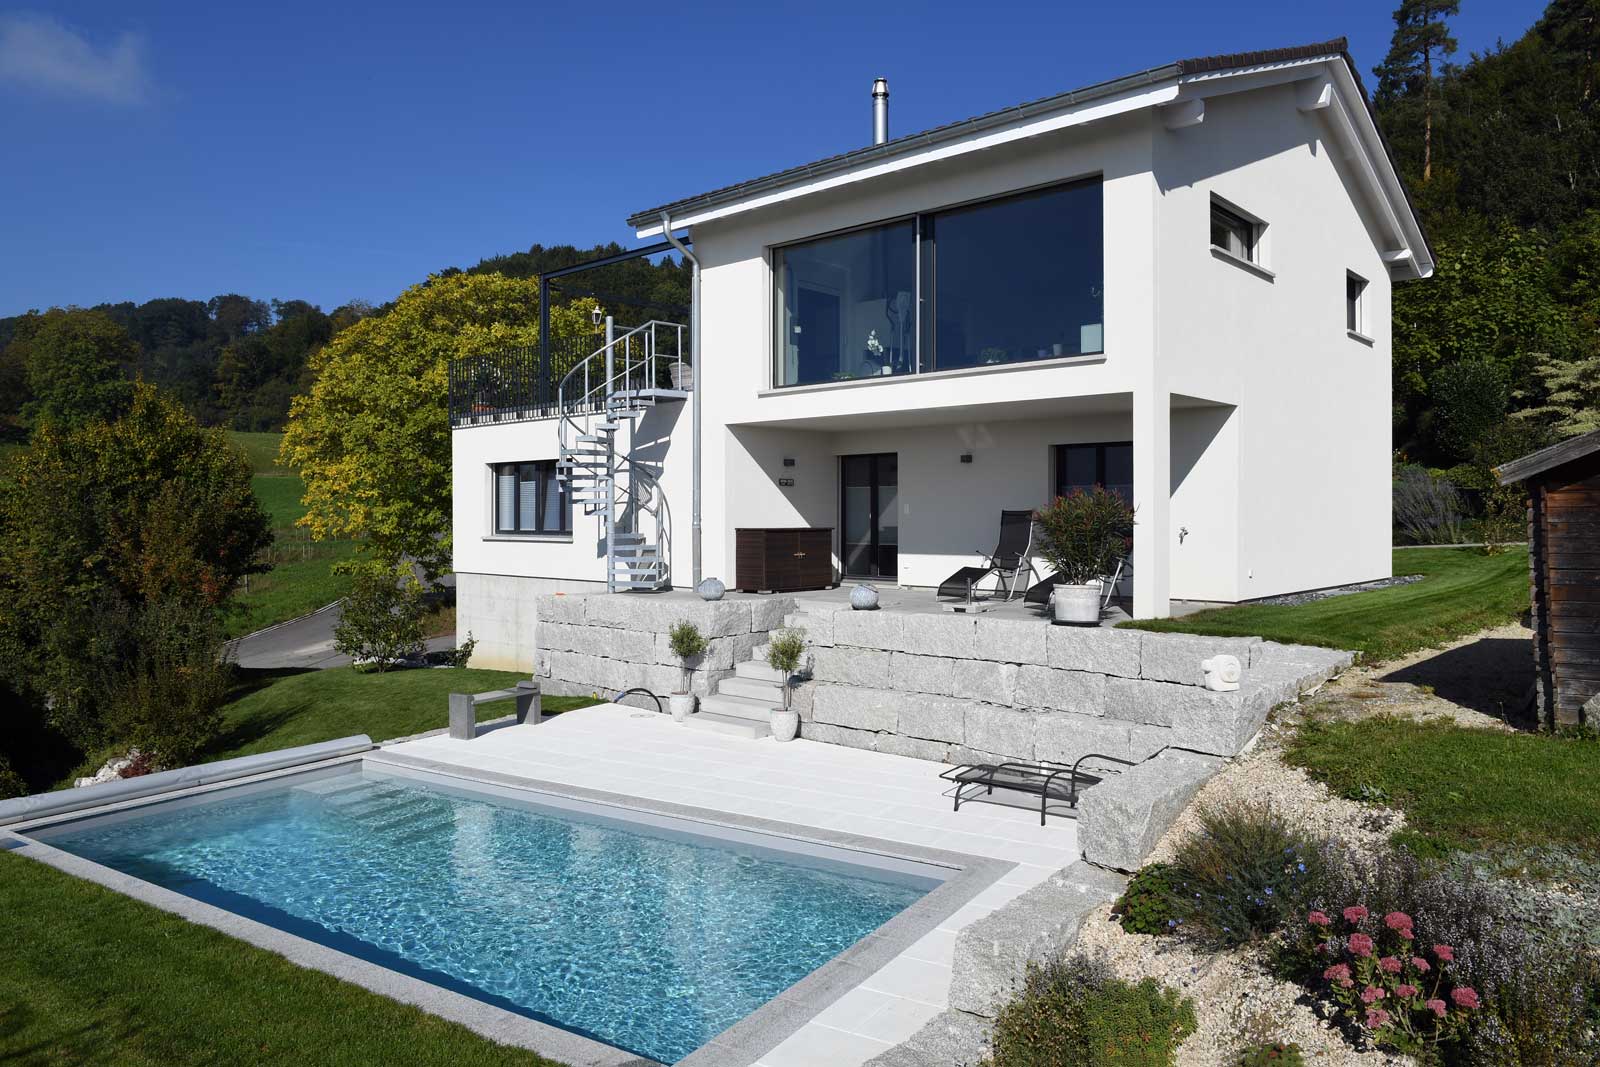 Umbau in ein modernes Einfamilienhaus durch die Bautec AG, Schweiz